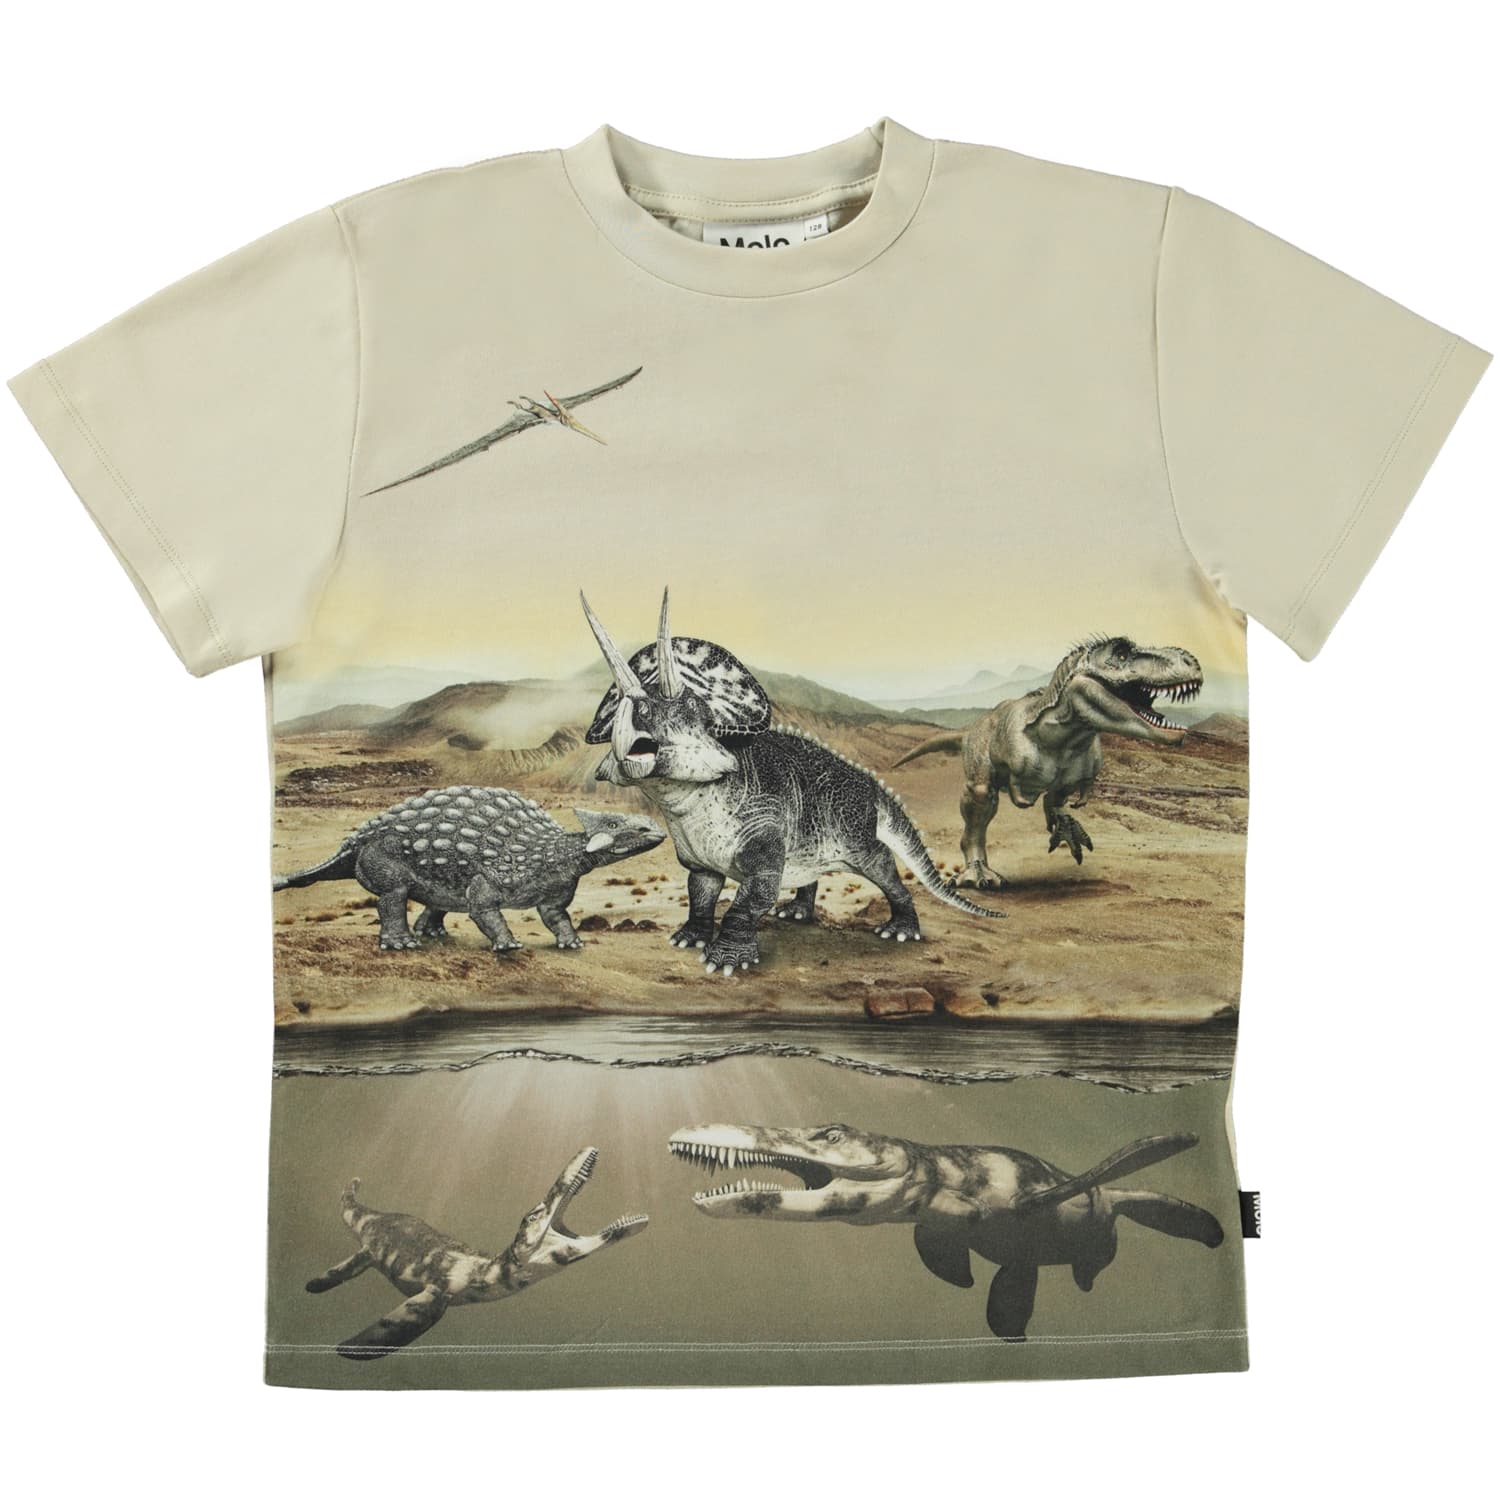 Roxo T-shirt (Desert Dinos)